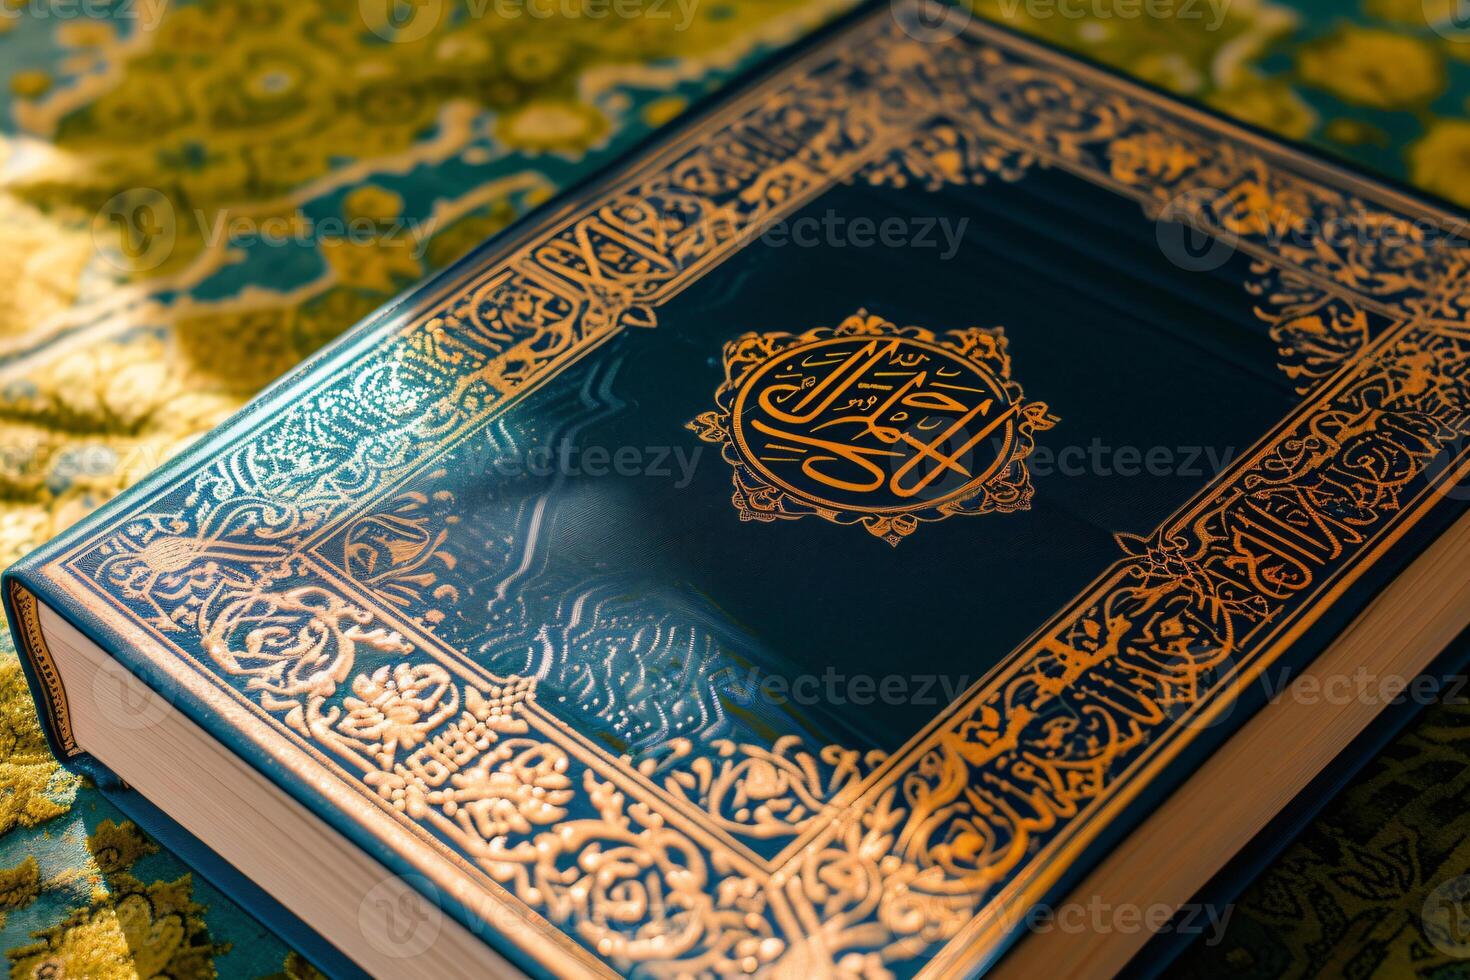 foto islamico nuovo anno Corano libro con date